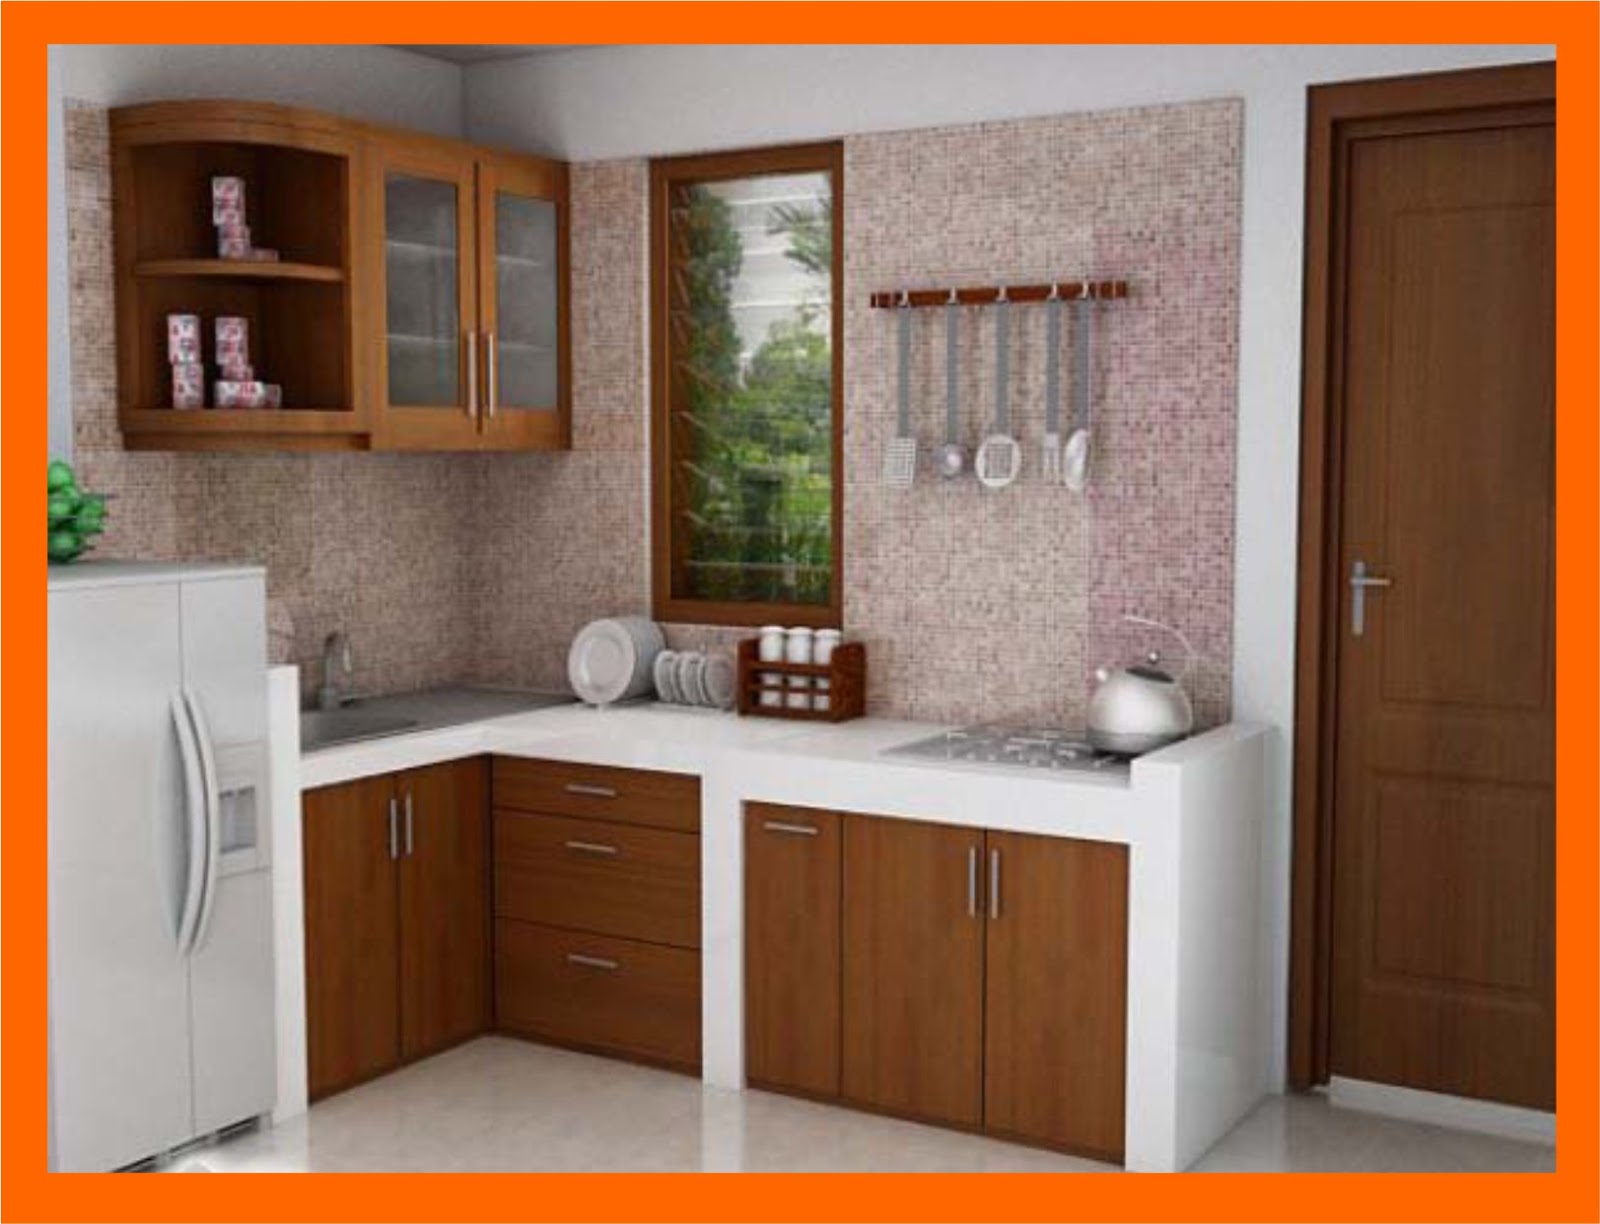 Desain Dapur Minimalis Untuk Rumah Type 36 Desain Rumah Idaman